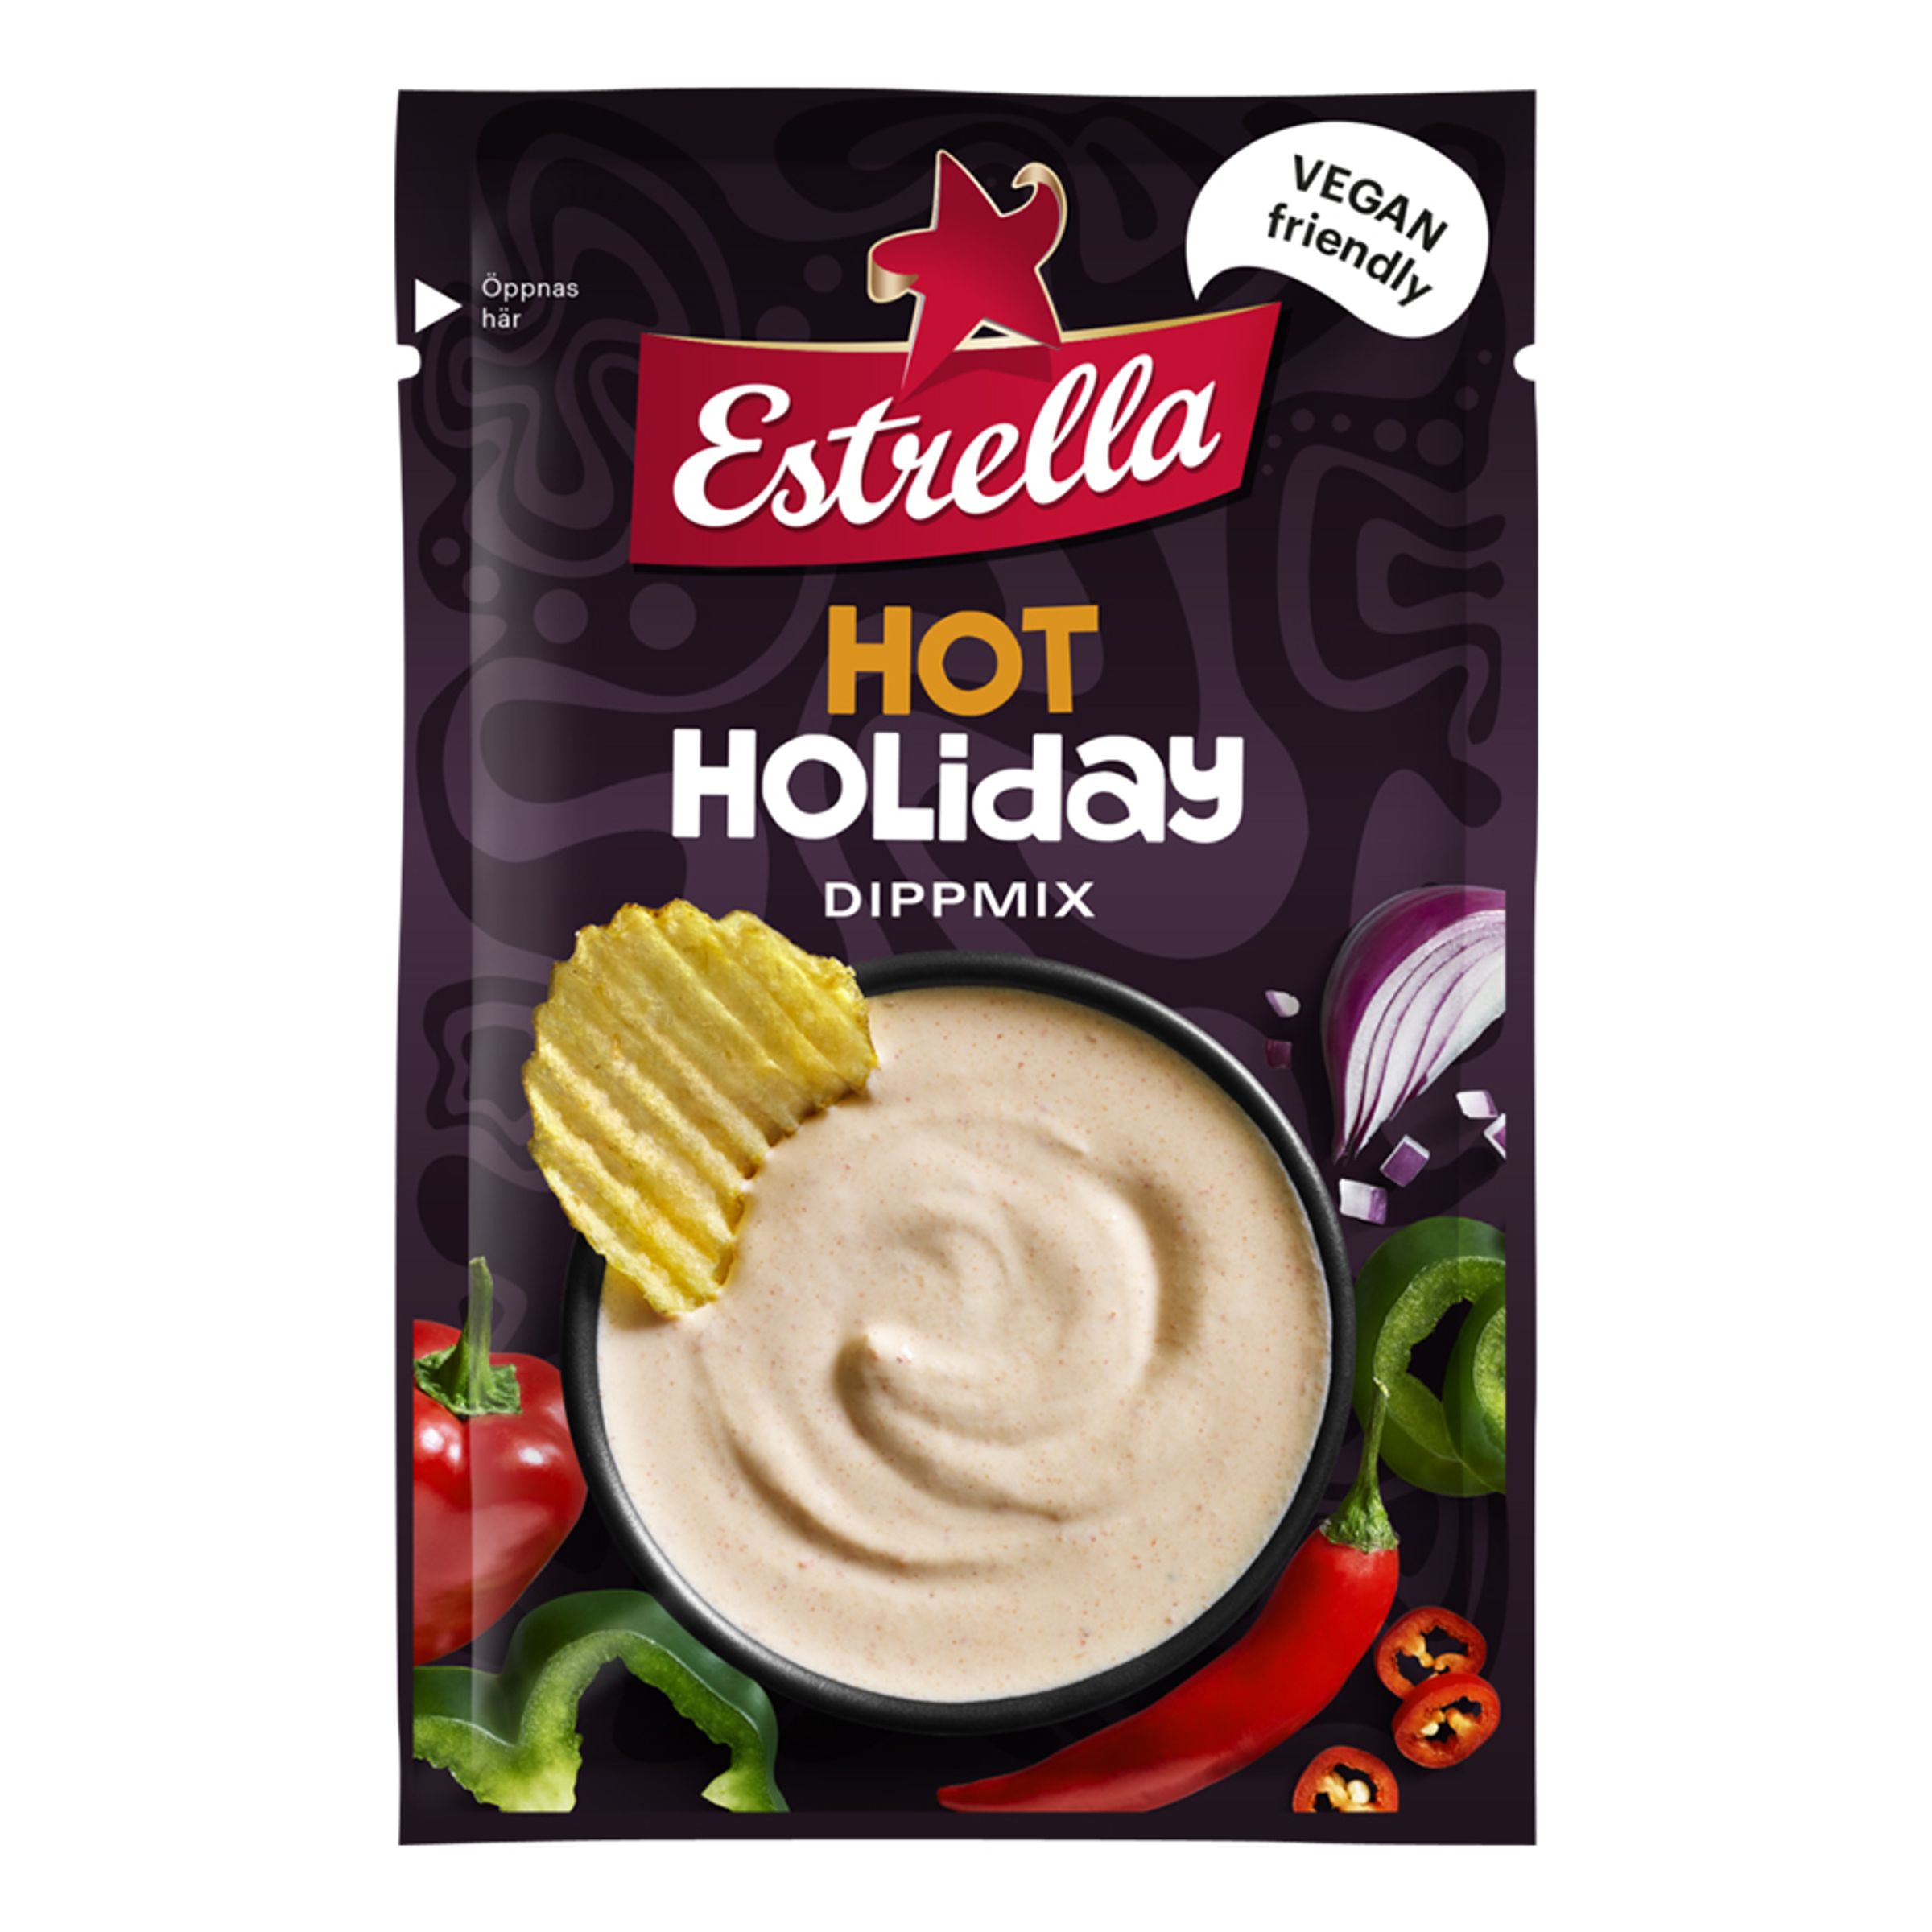 Estrella Dipmix Hot Holiday - 20 gram